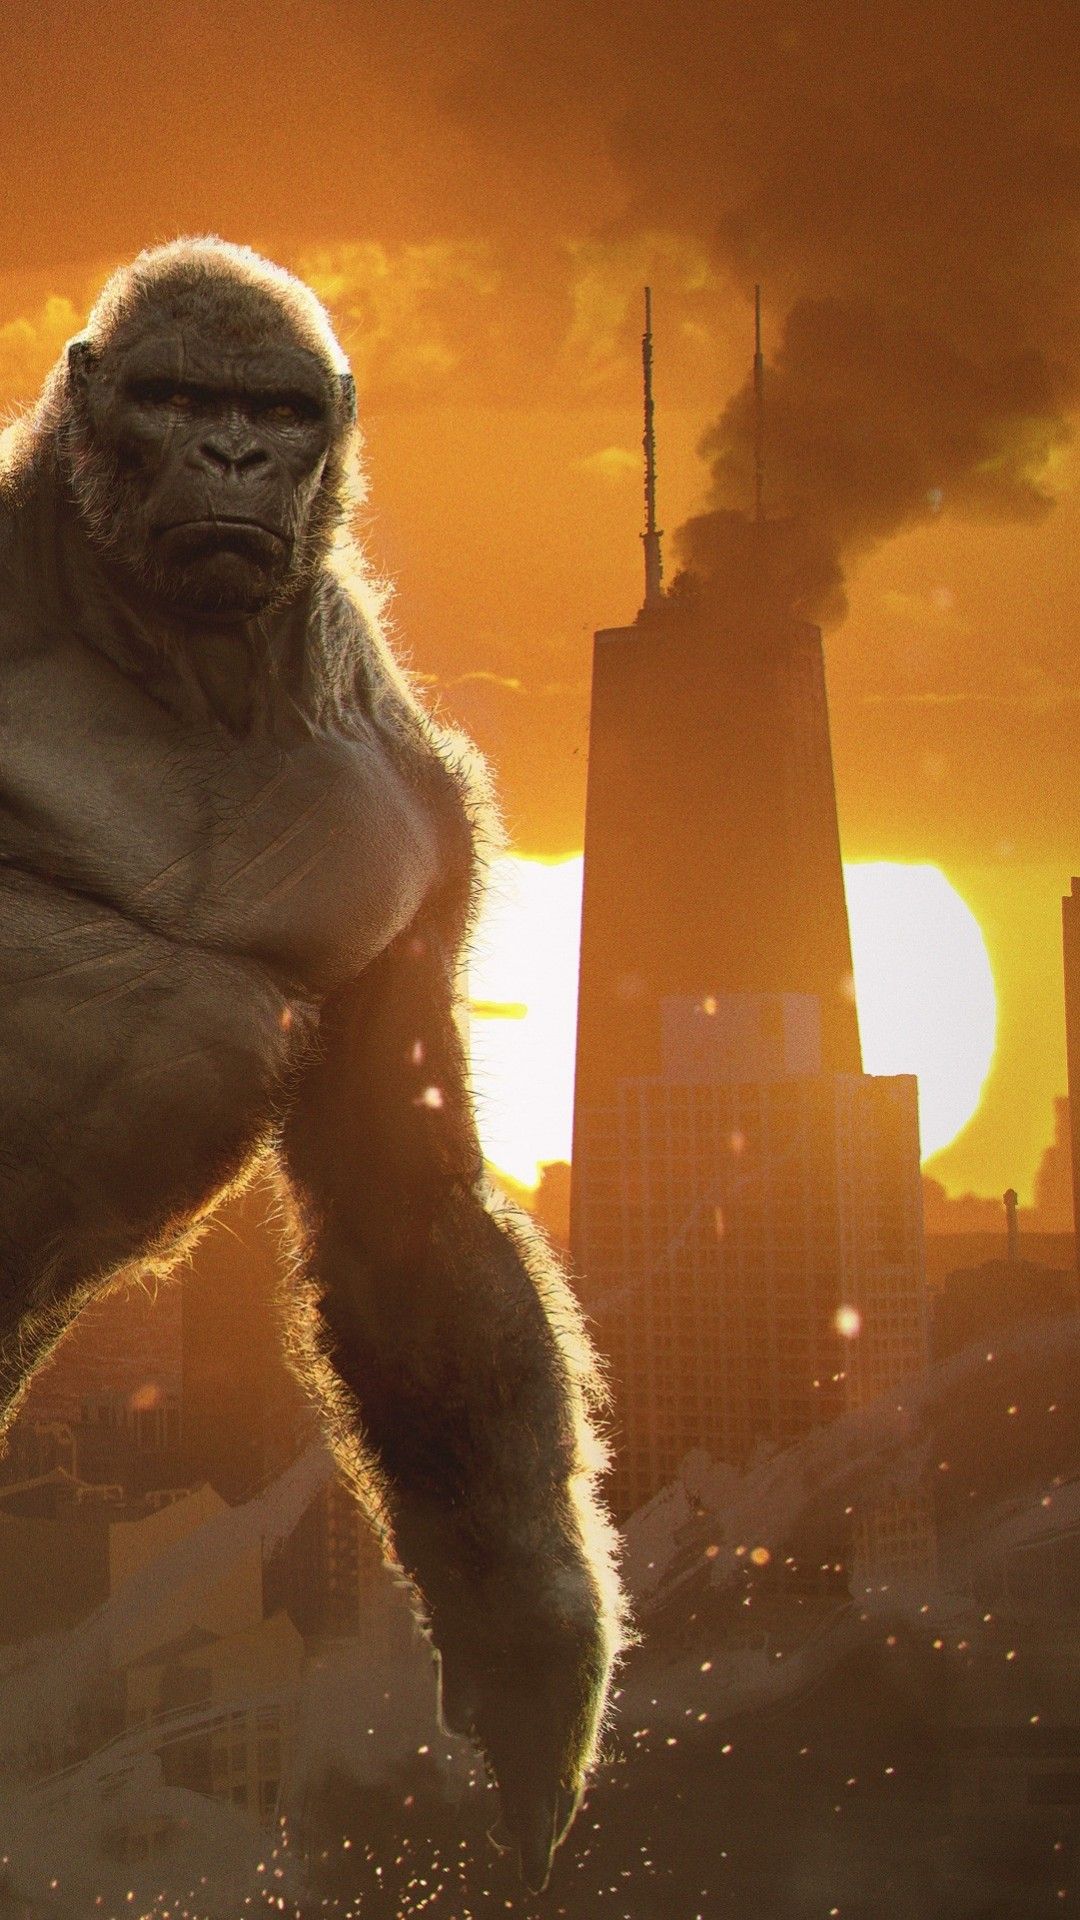 Godzilla vs Kong 4K Wallpaper, King Kong, 2020 Movies, Movies